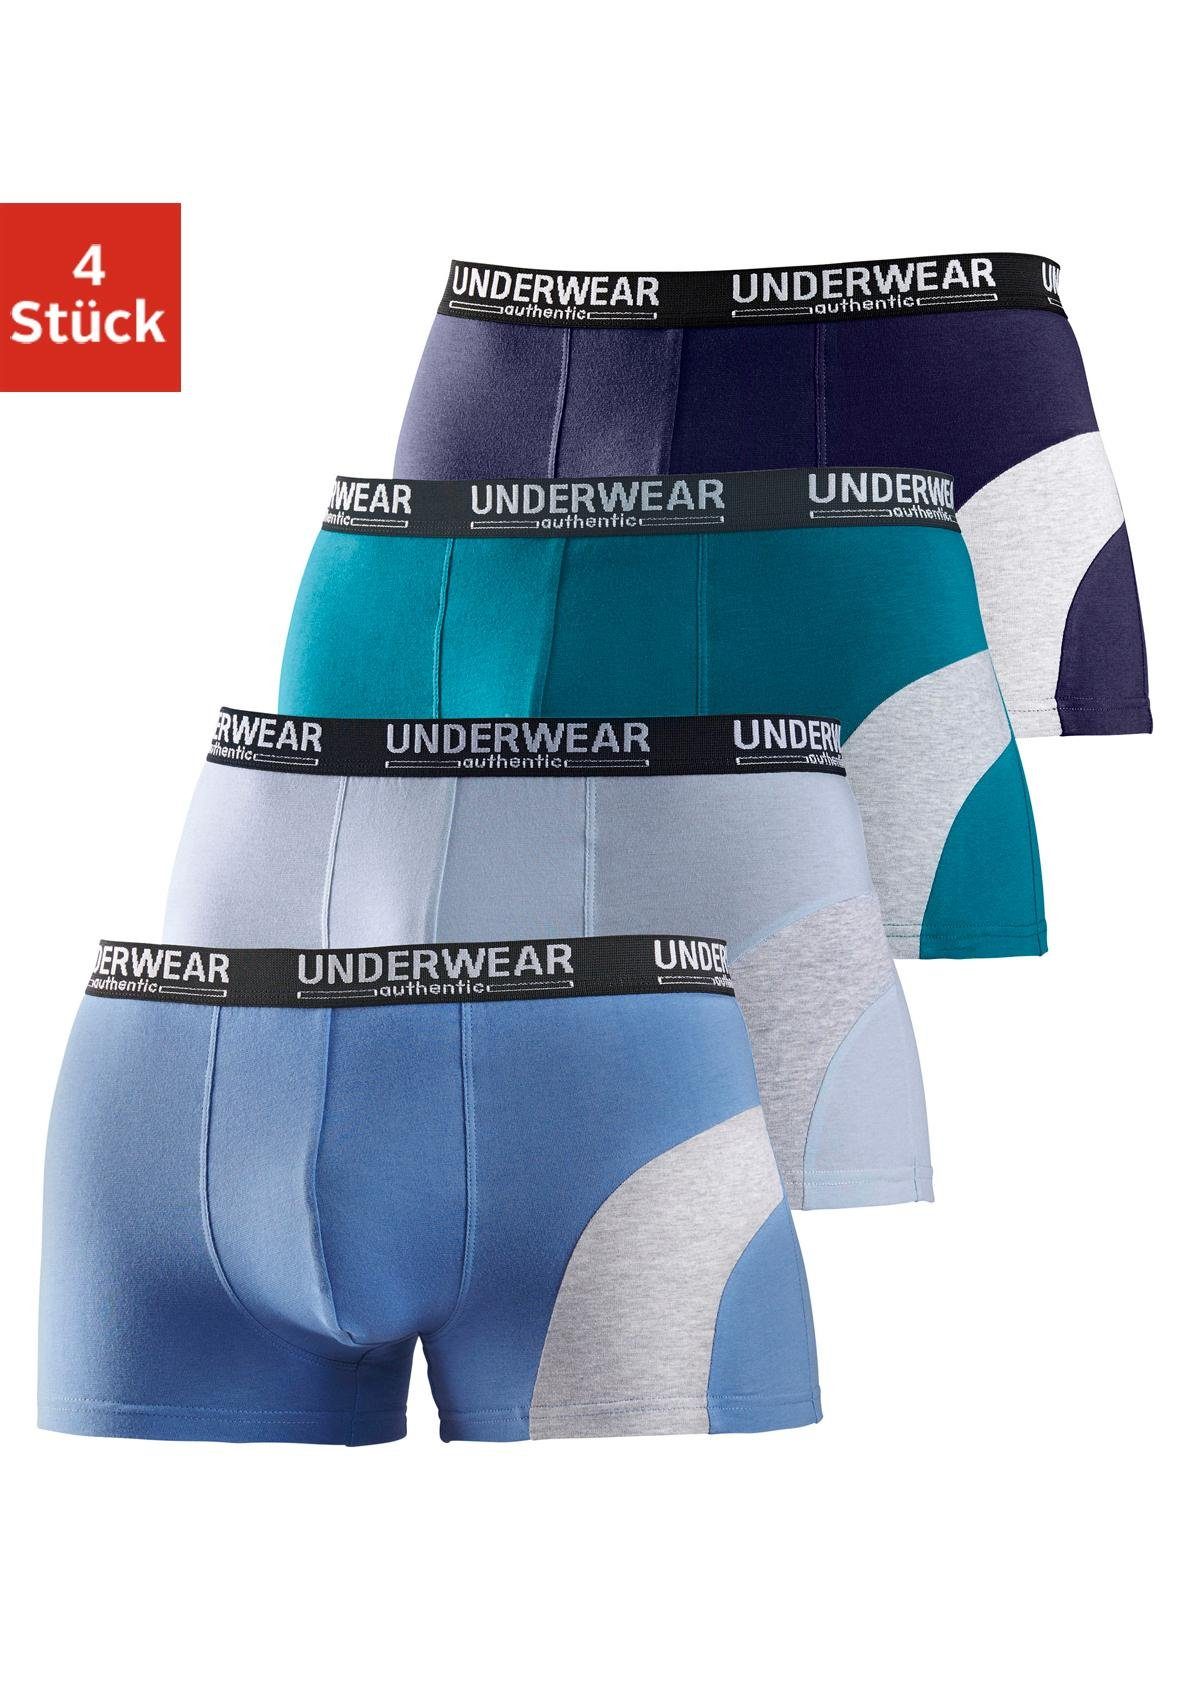 Günstige Unterhosen für Herren kaufen » Unterhosen SALE | OTTO